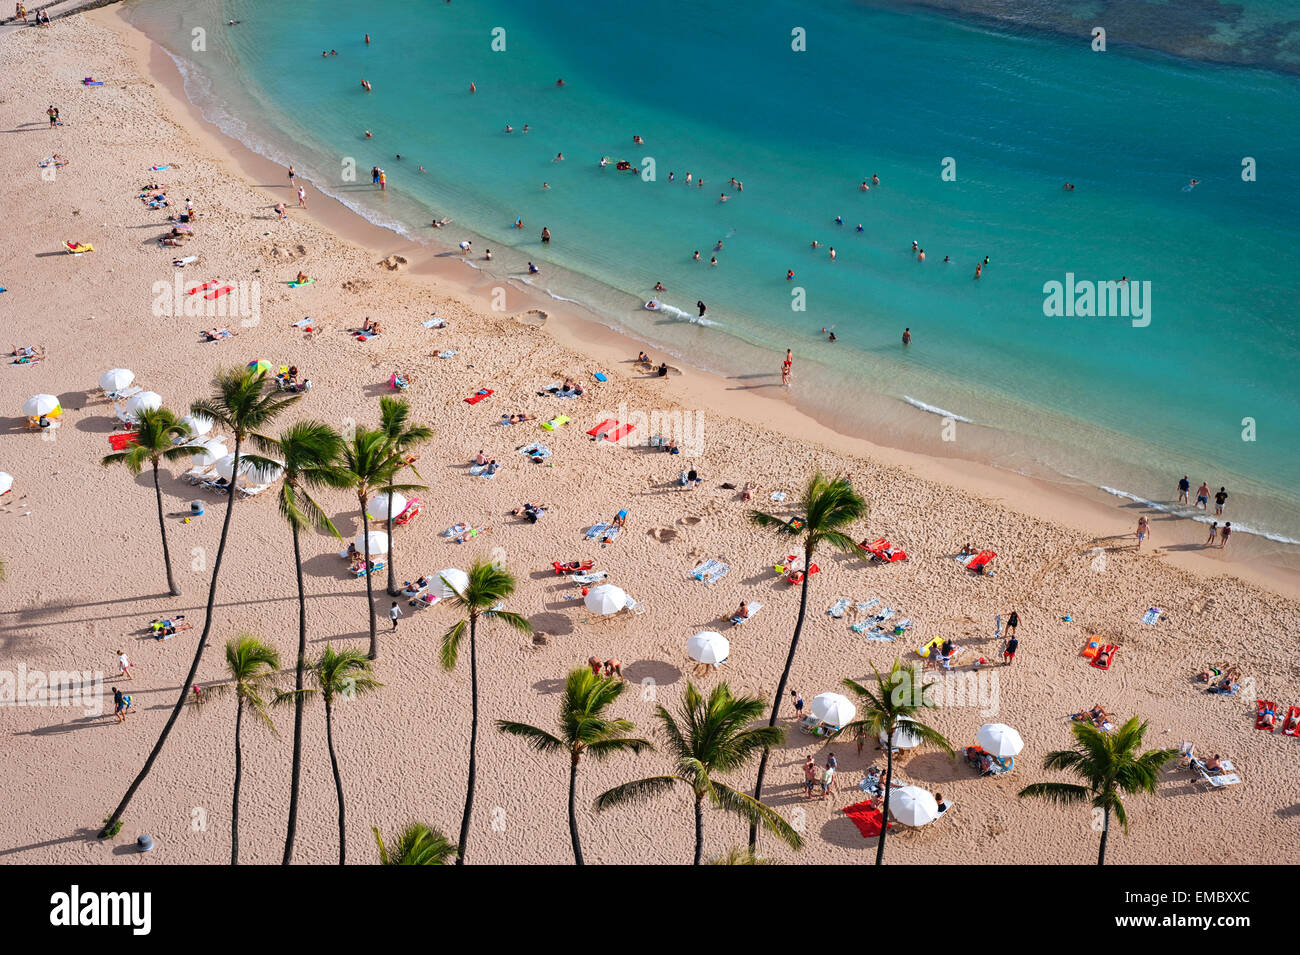 La plage de Waikiki, Oahu, Hawaii Banque D'Images